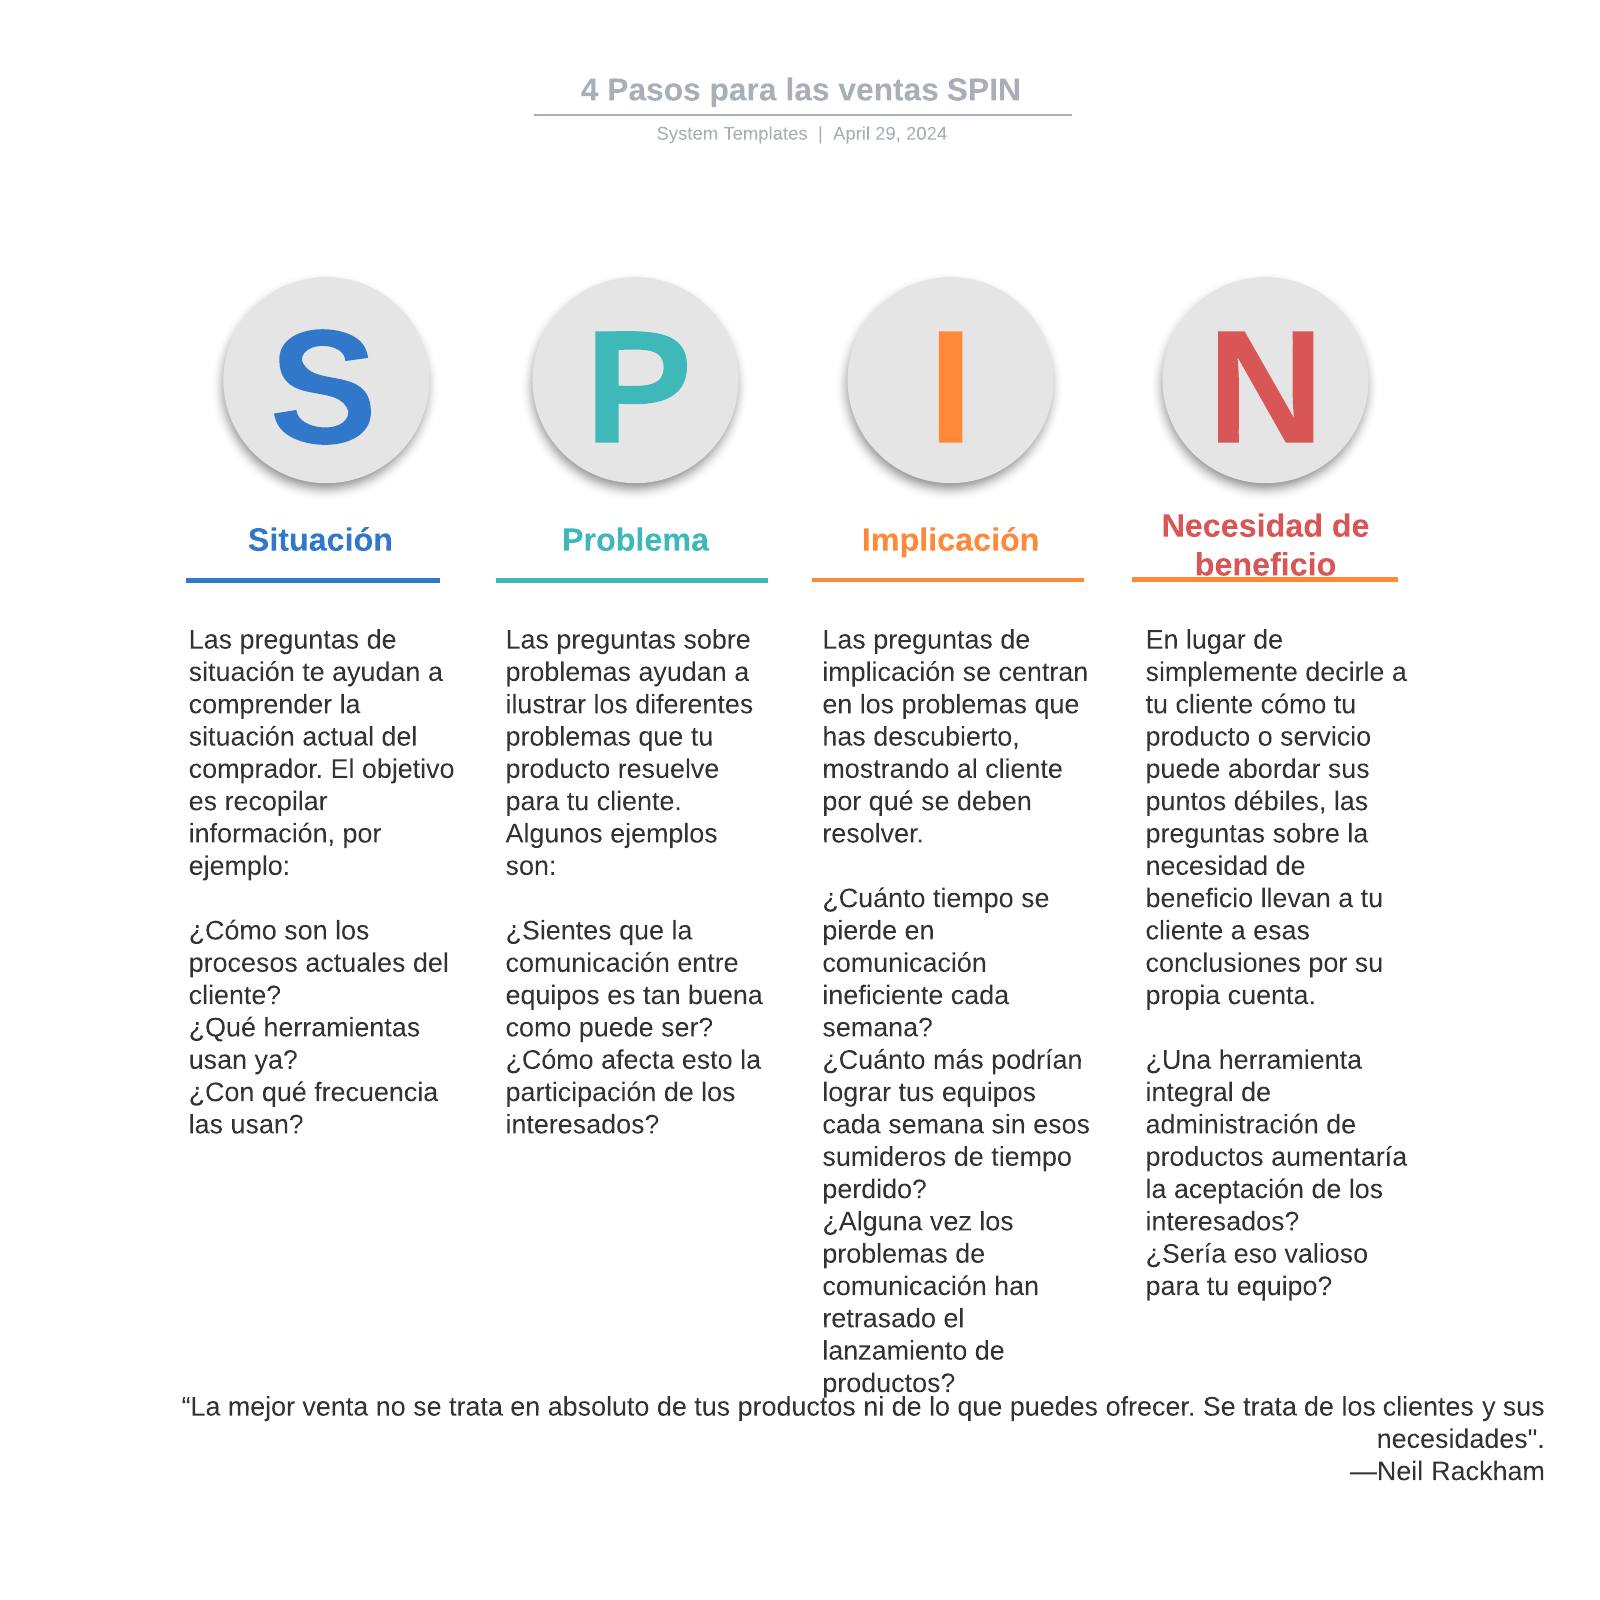 4 Pasos para las ventas SPIN example